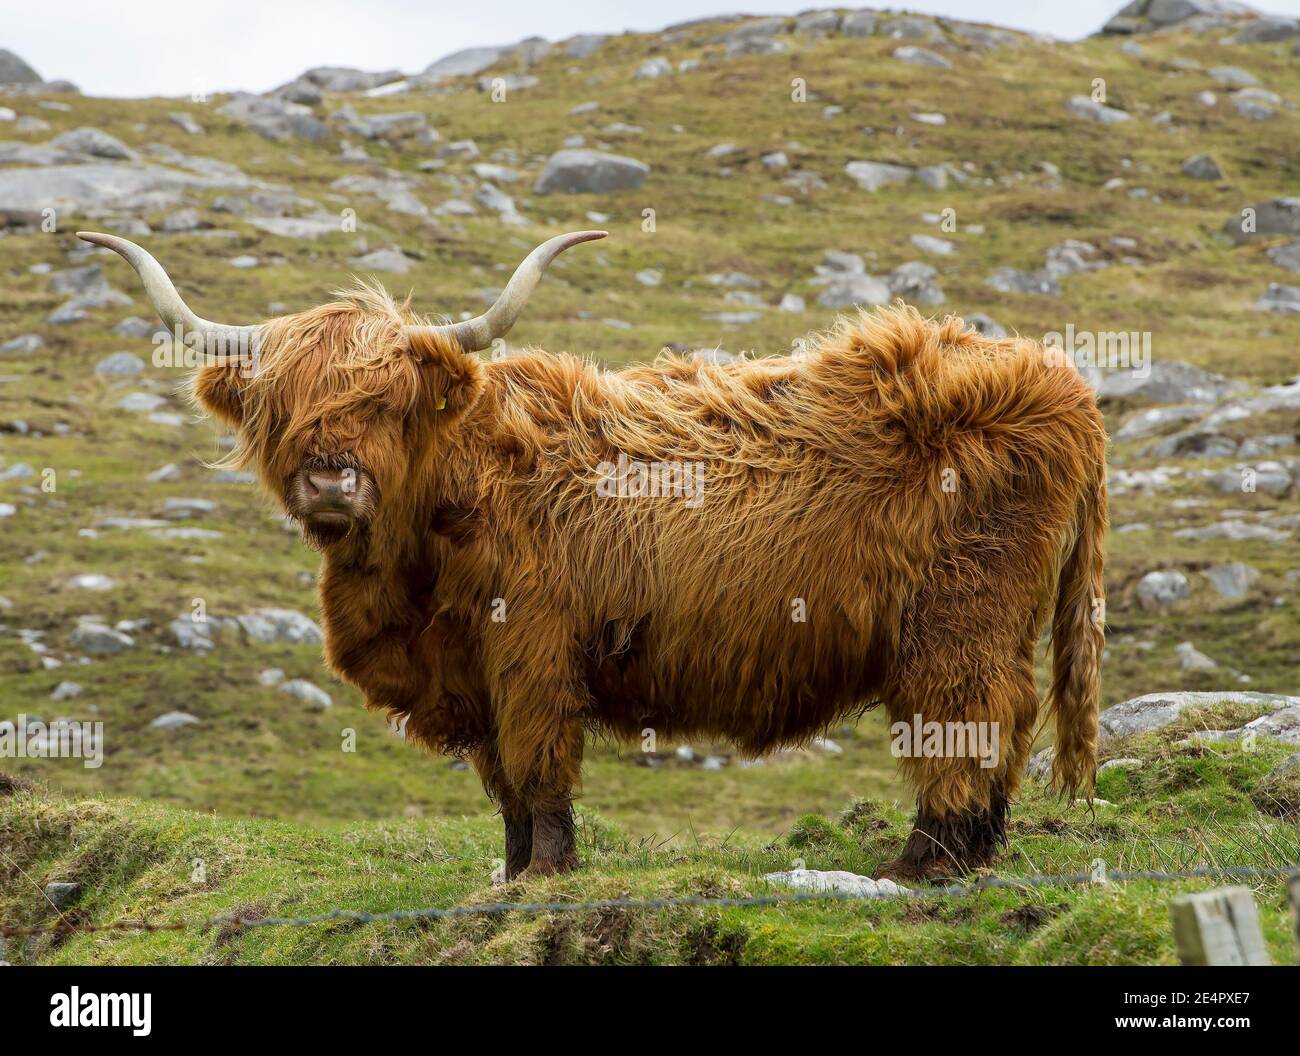 Highland Cow, Isle of Harris Äußere Hebriden, Schottland, Großbritannien. Stockfoto